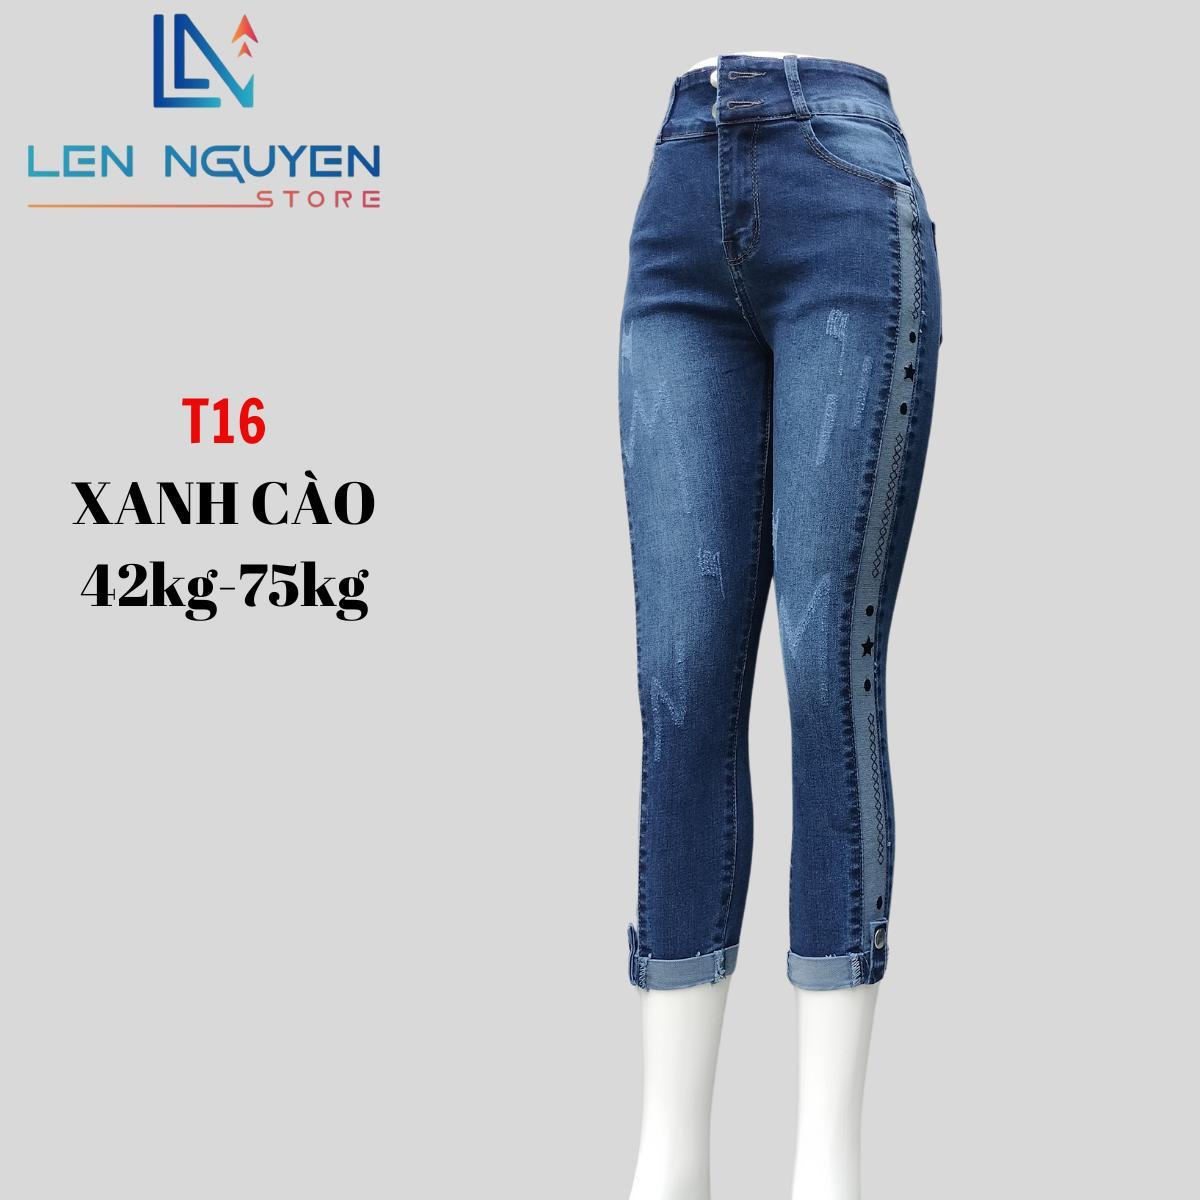 T16_Quần jean nữ lỡ dài 82-83cm thiết kế thêu sườn ,chất liệu vải cao cấp, co giãn